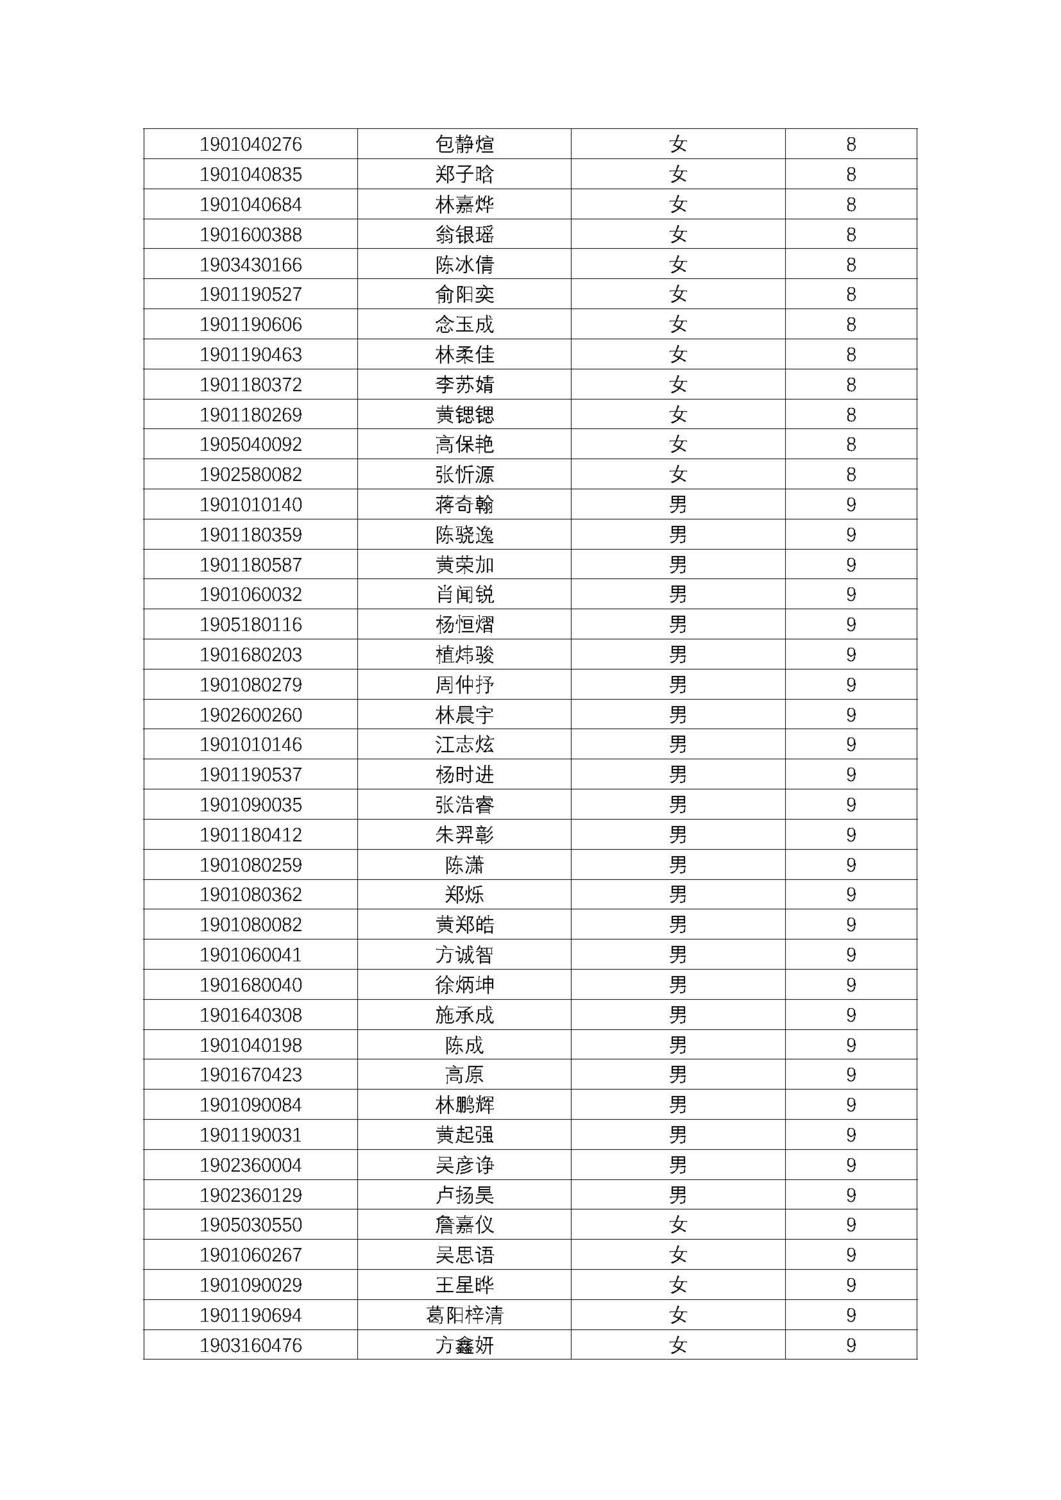 福州第十八中学2019级高一新生分班名单及报到须知_页面_11.jpg